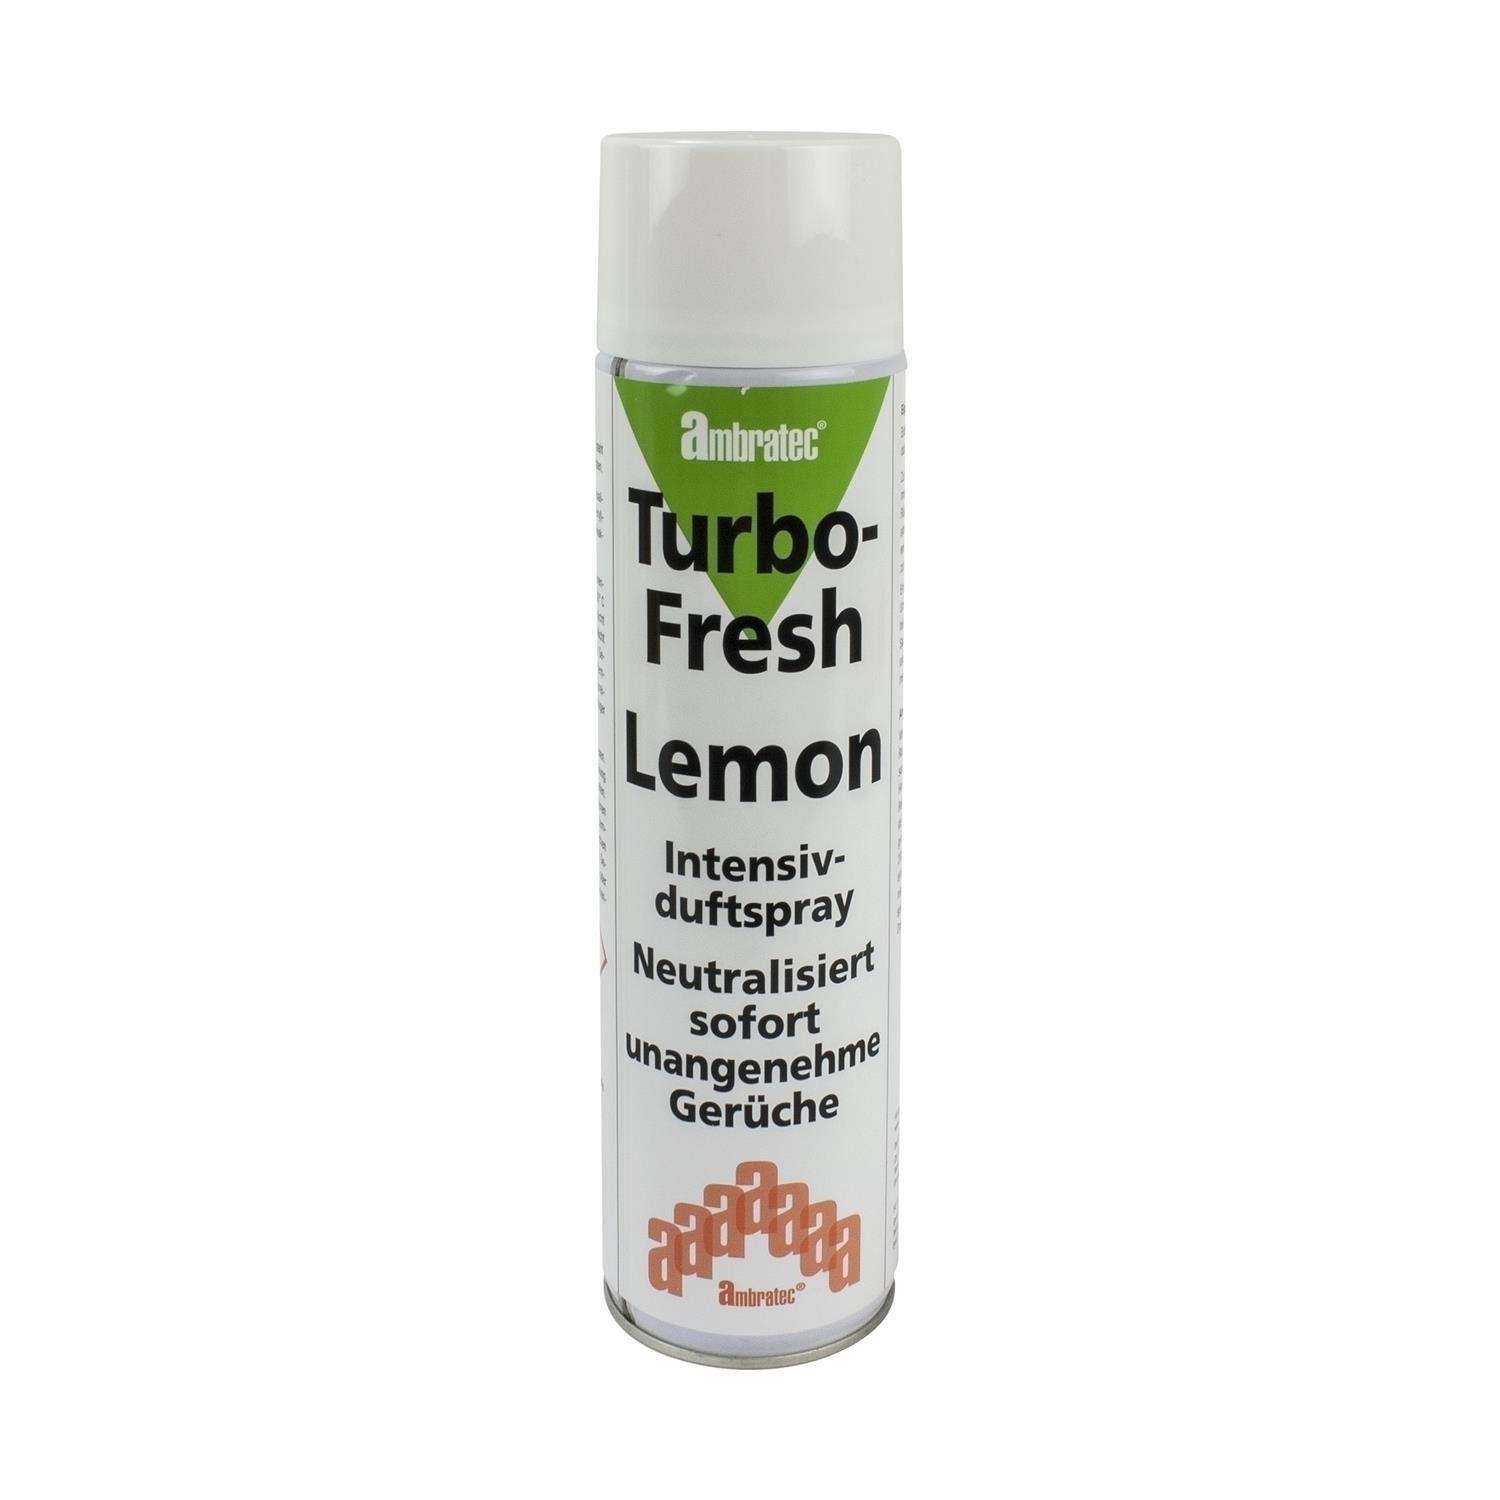 Ambratec Turbo-Fresh Lemon unter Luft & Wasser > Geruchsneutralisierung